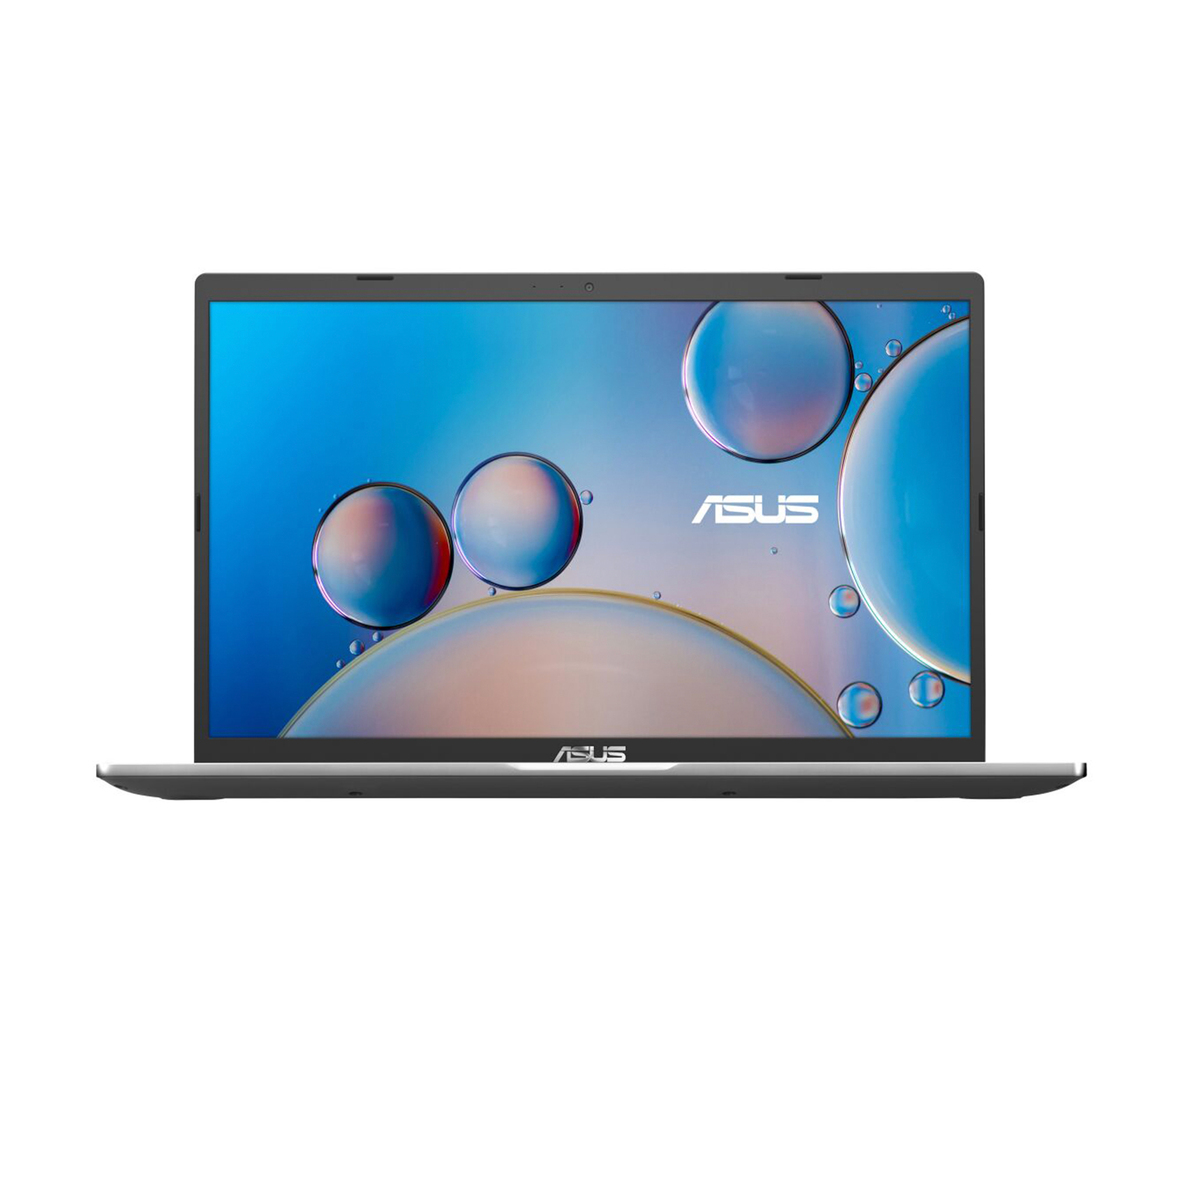 Asus Notebook X415JP-EK016T,Intel Core i5,8GB RAM,512GB SSD,2GB Graphics,14.0" FHD,Windows 10,Silver